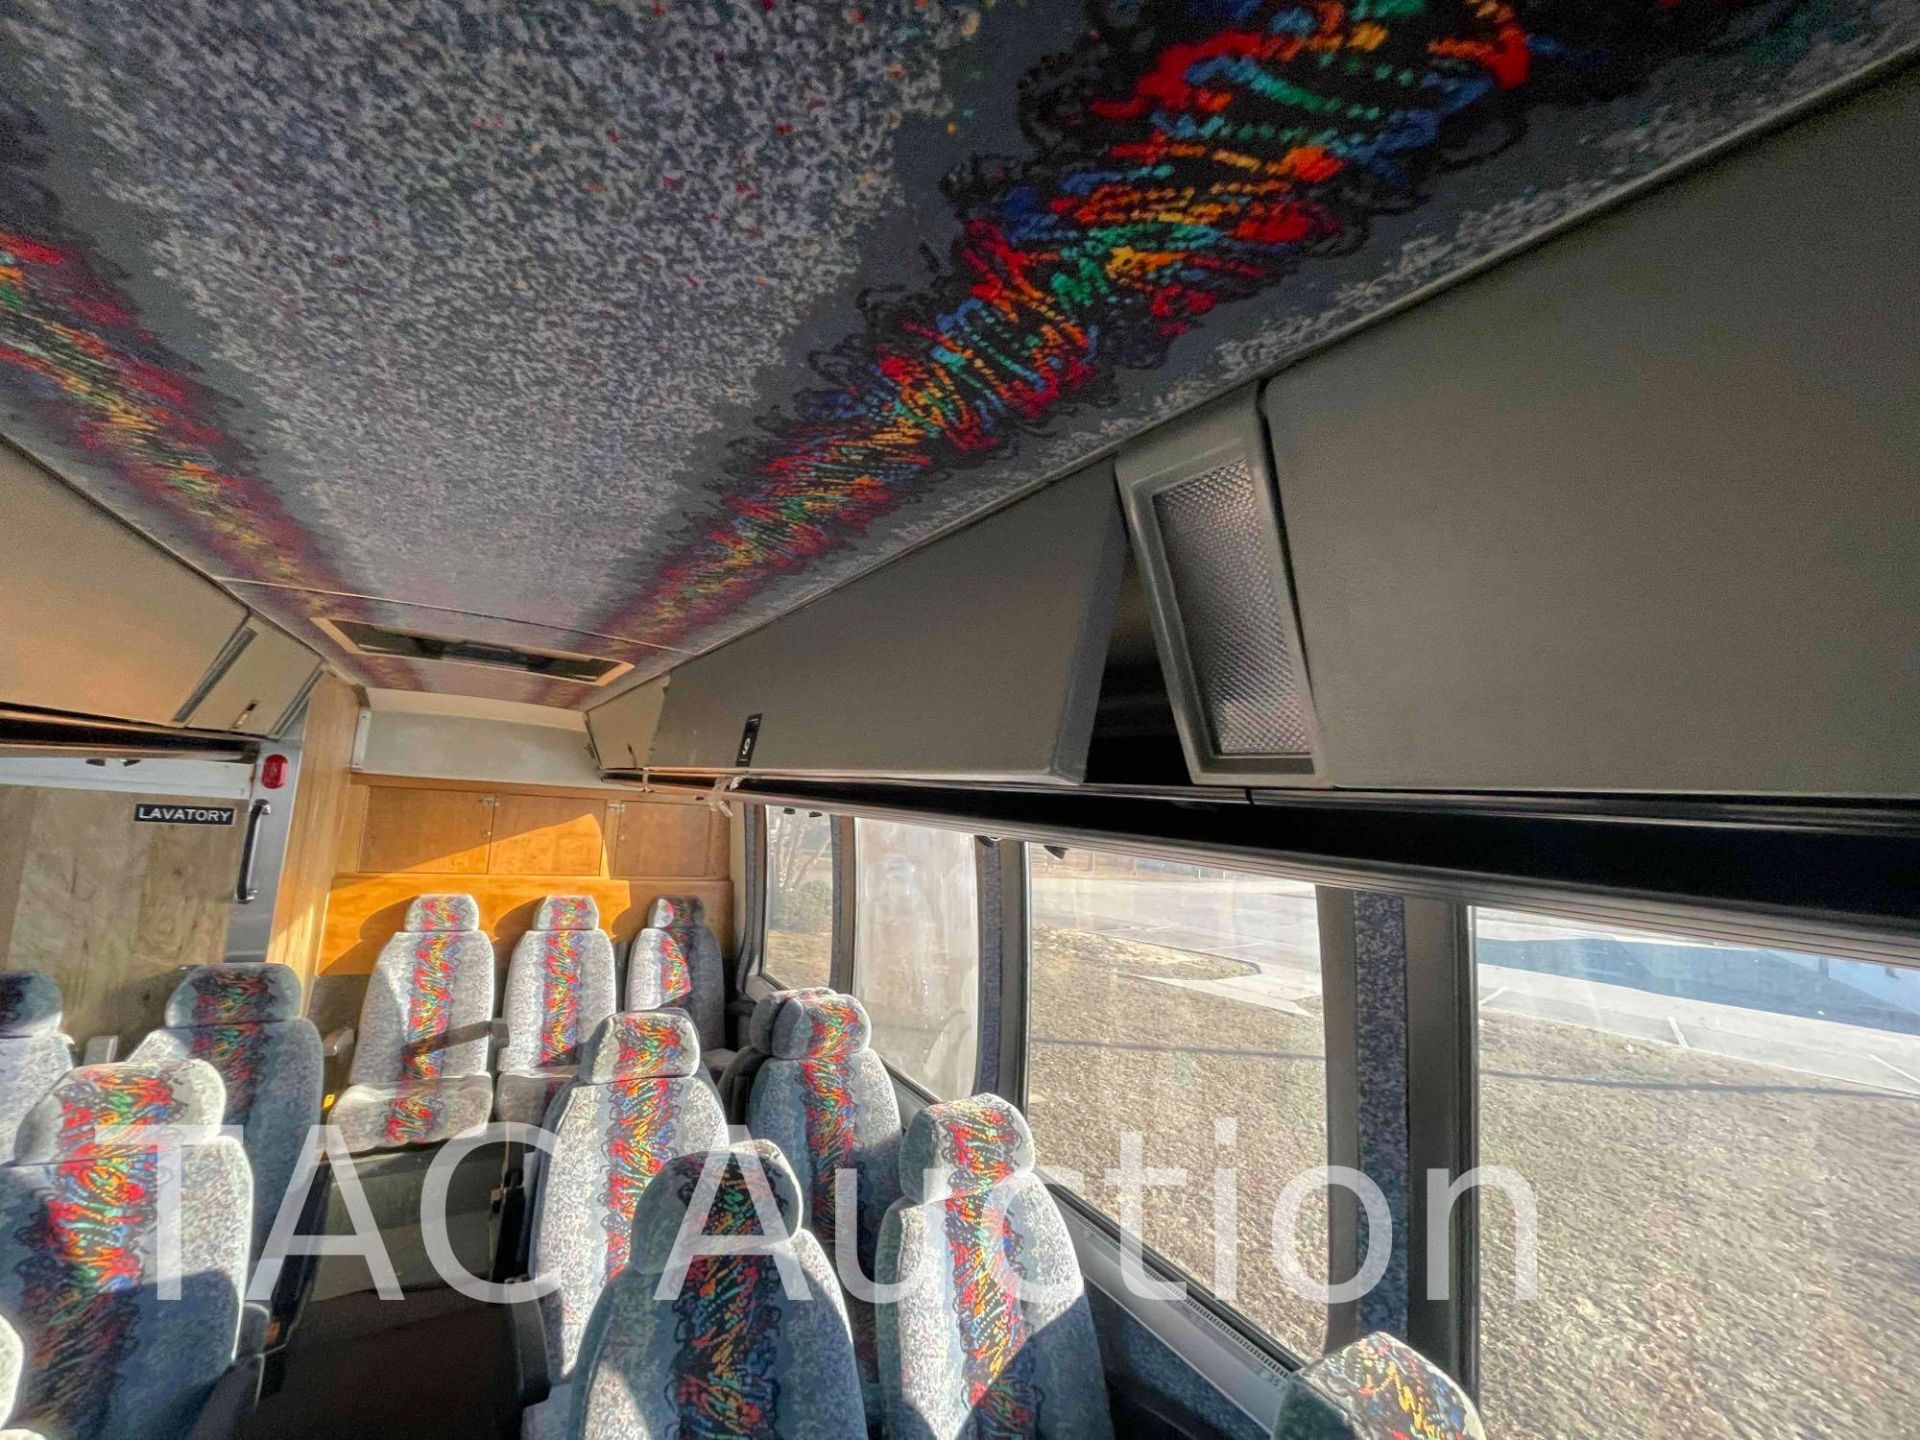 1989 Prevost LE Mirage Coach 48 Passenger Bus - Image 61 of 93